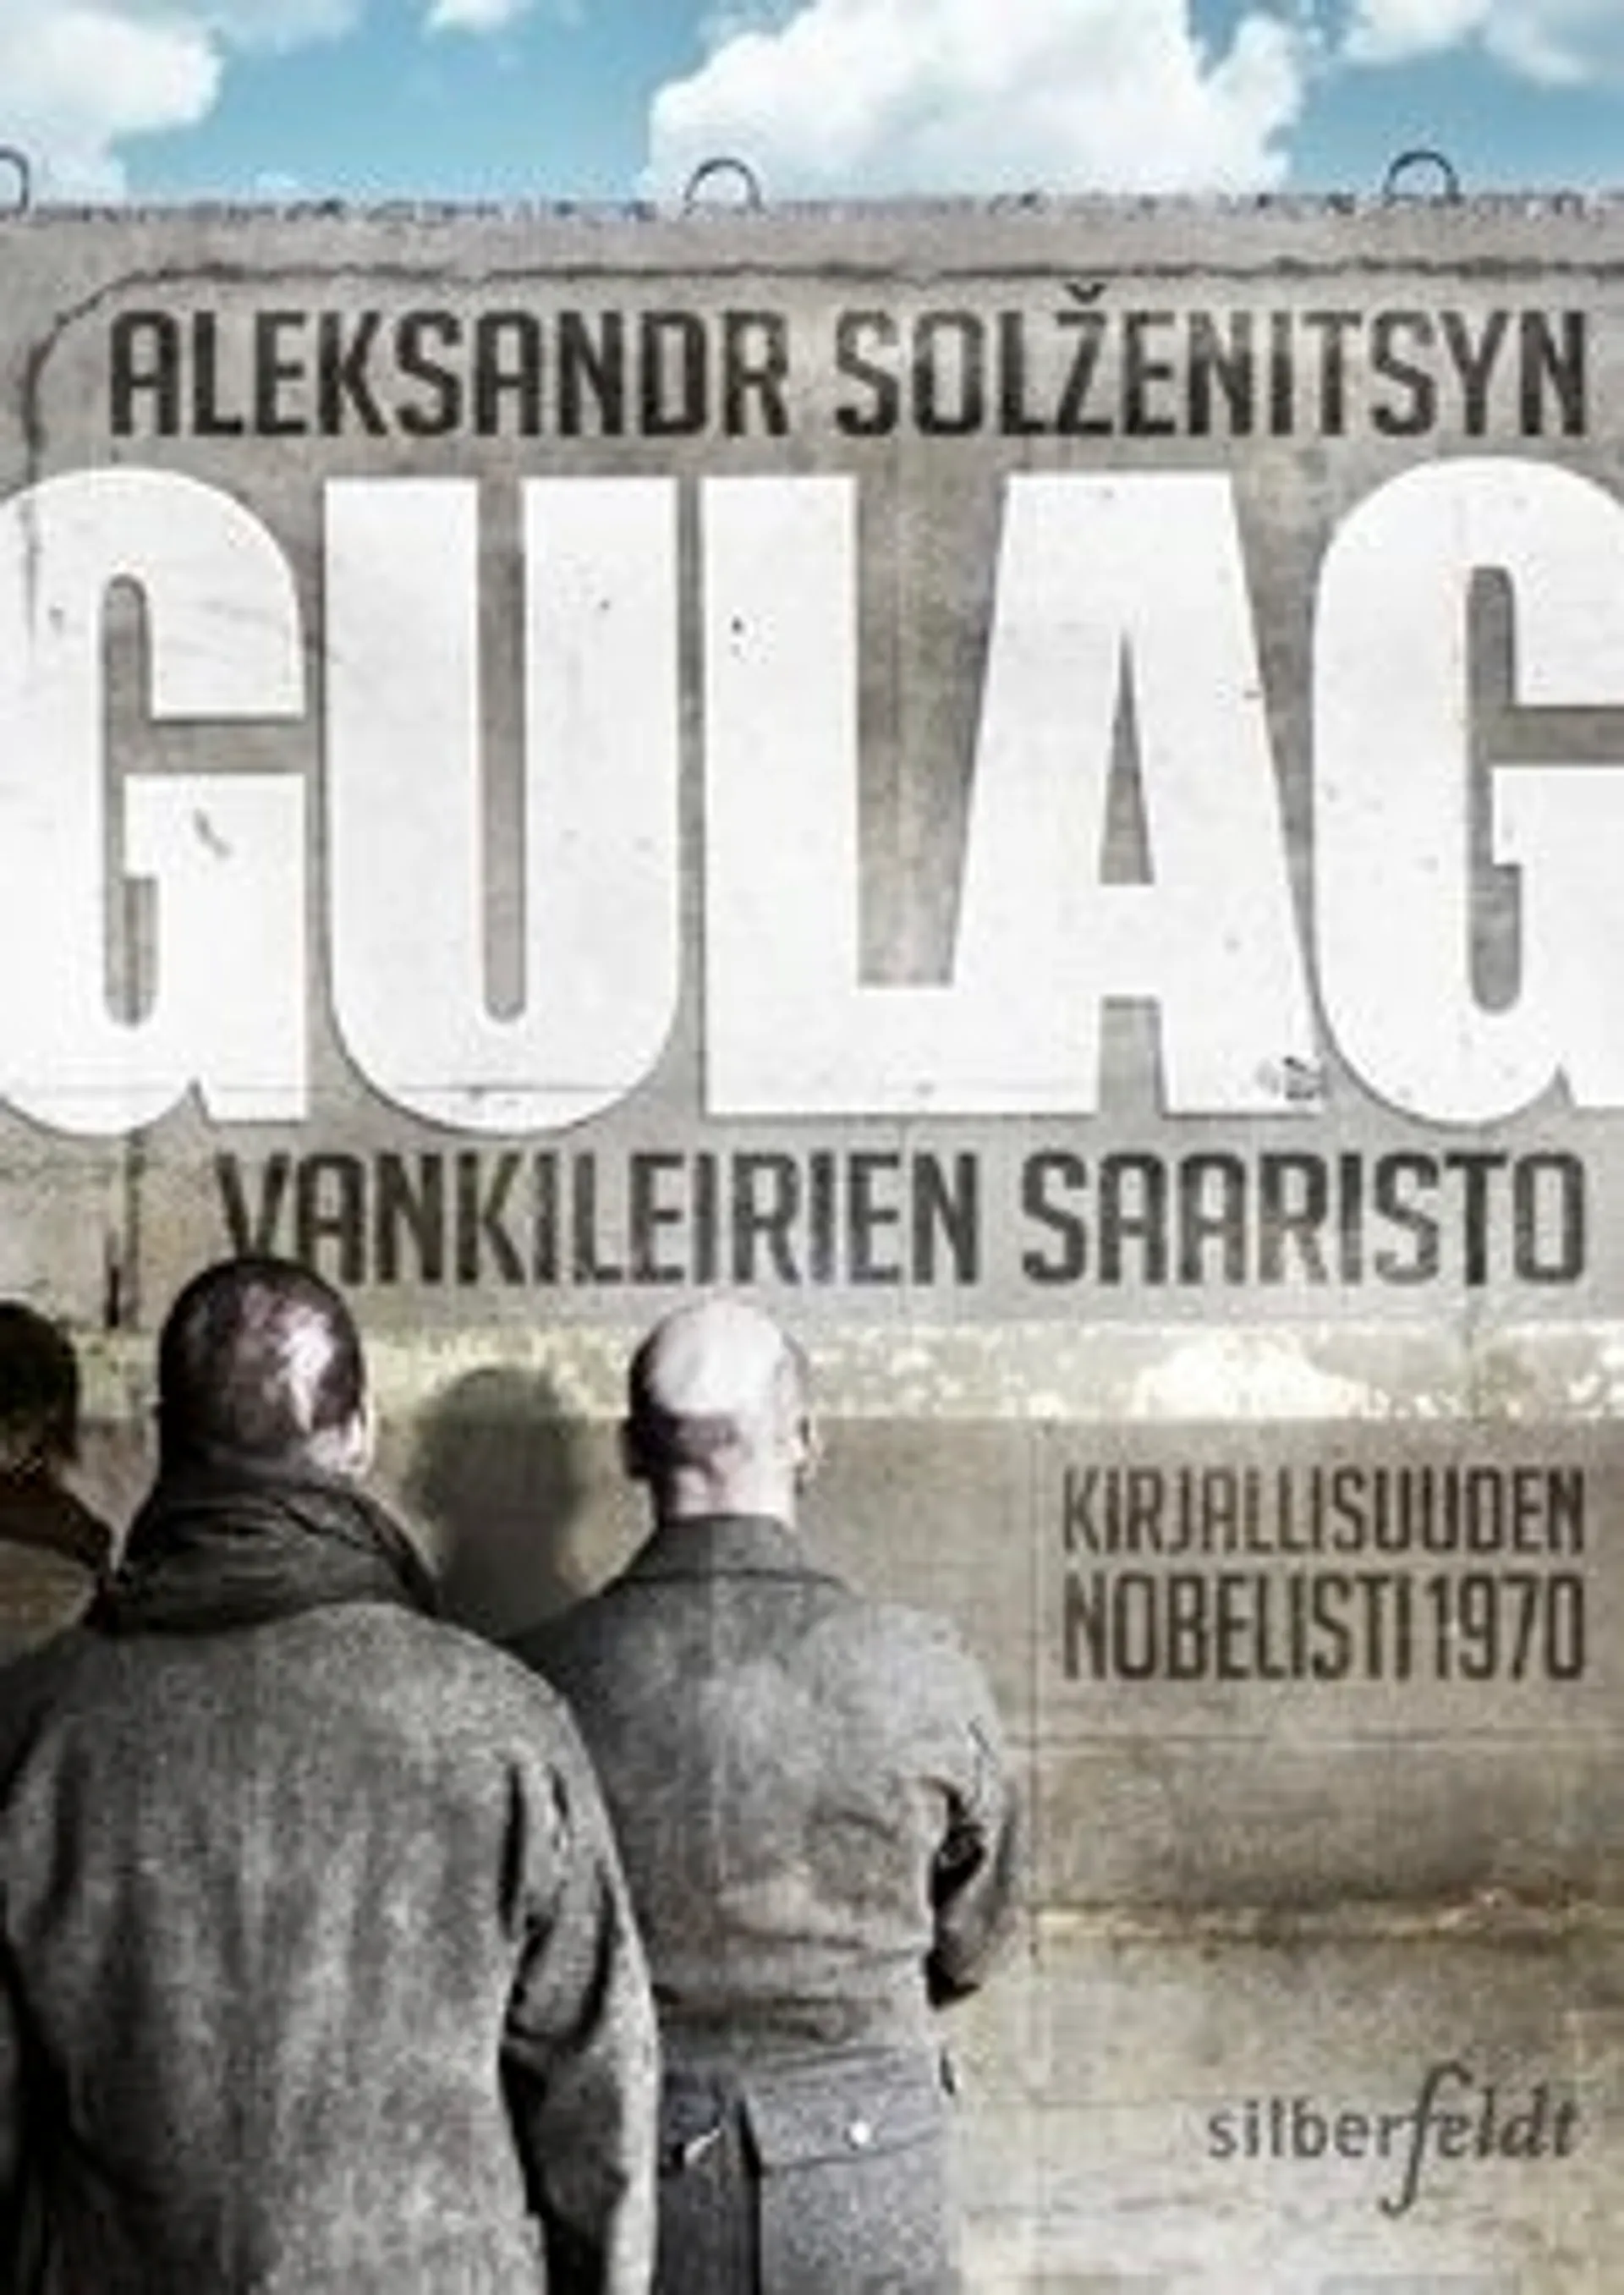 Solzenitsyn, Gulag